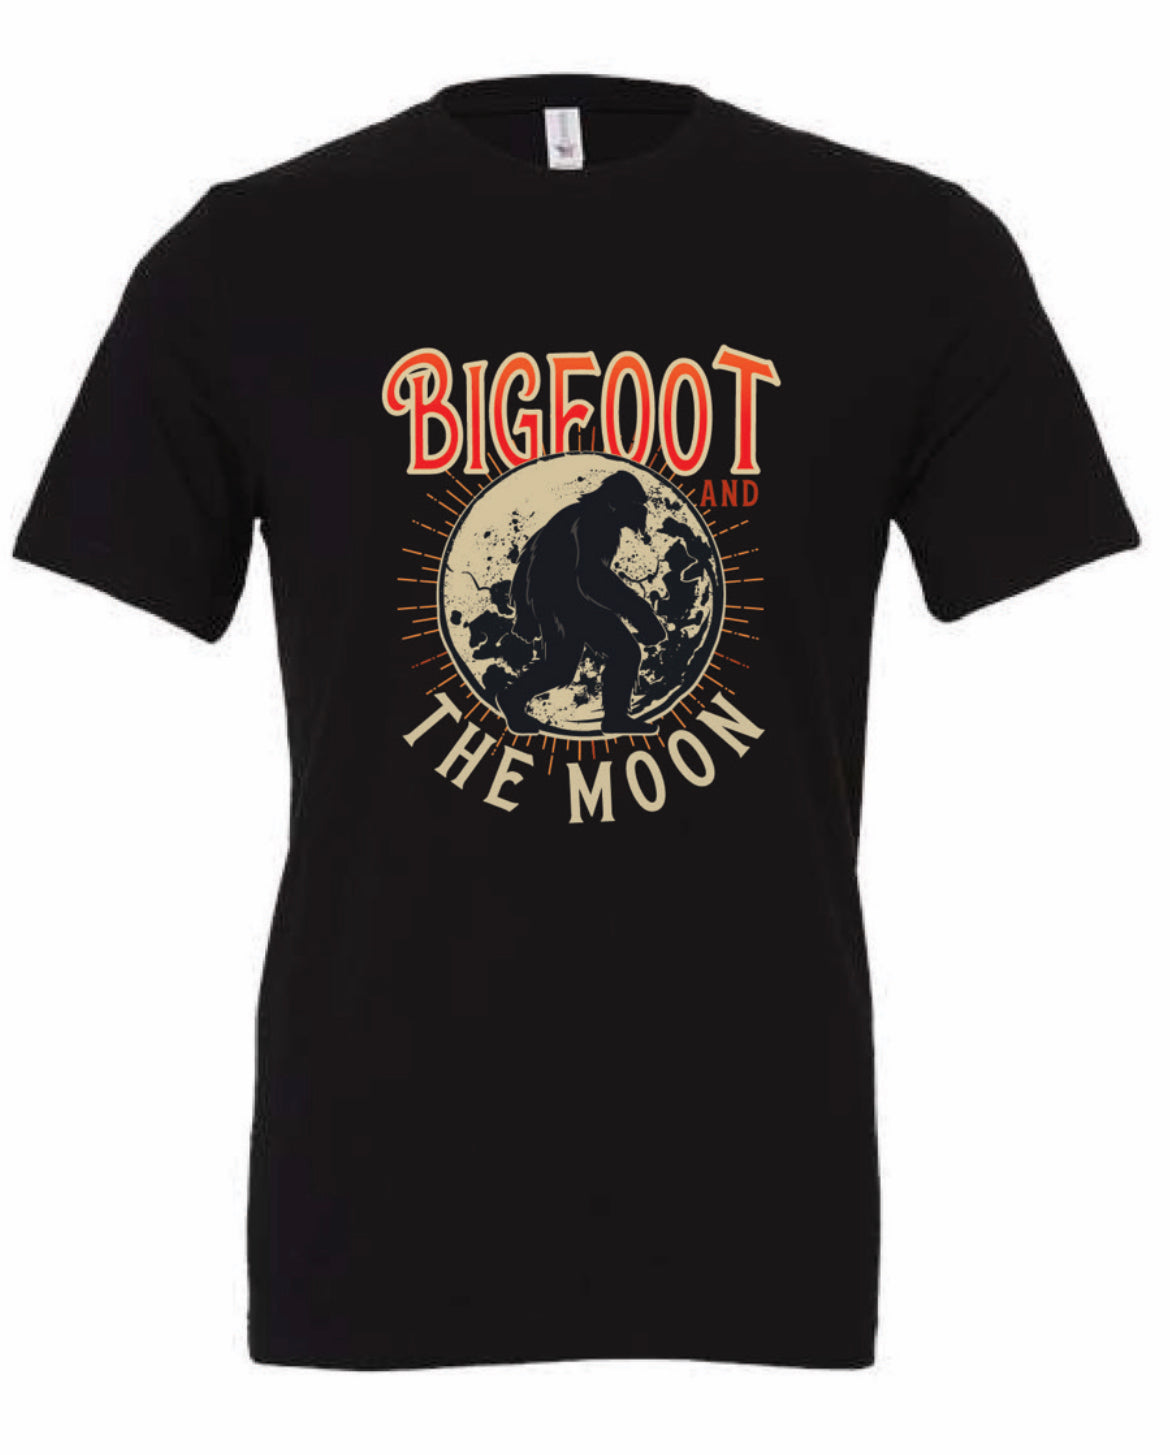 Bigfoot And The Moon T-Shirt!